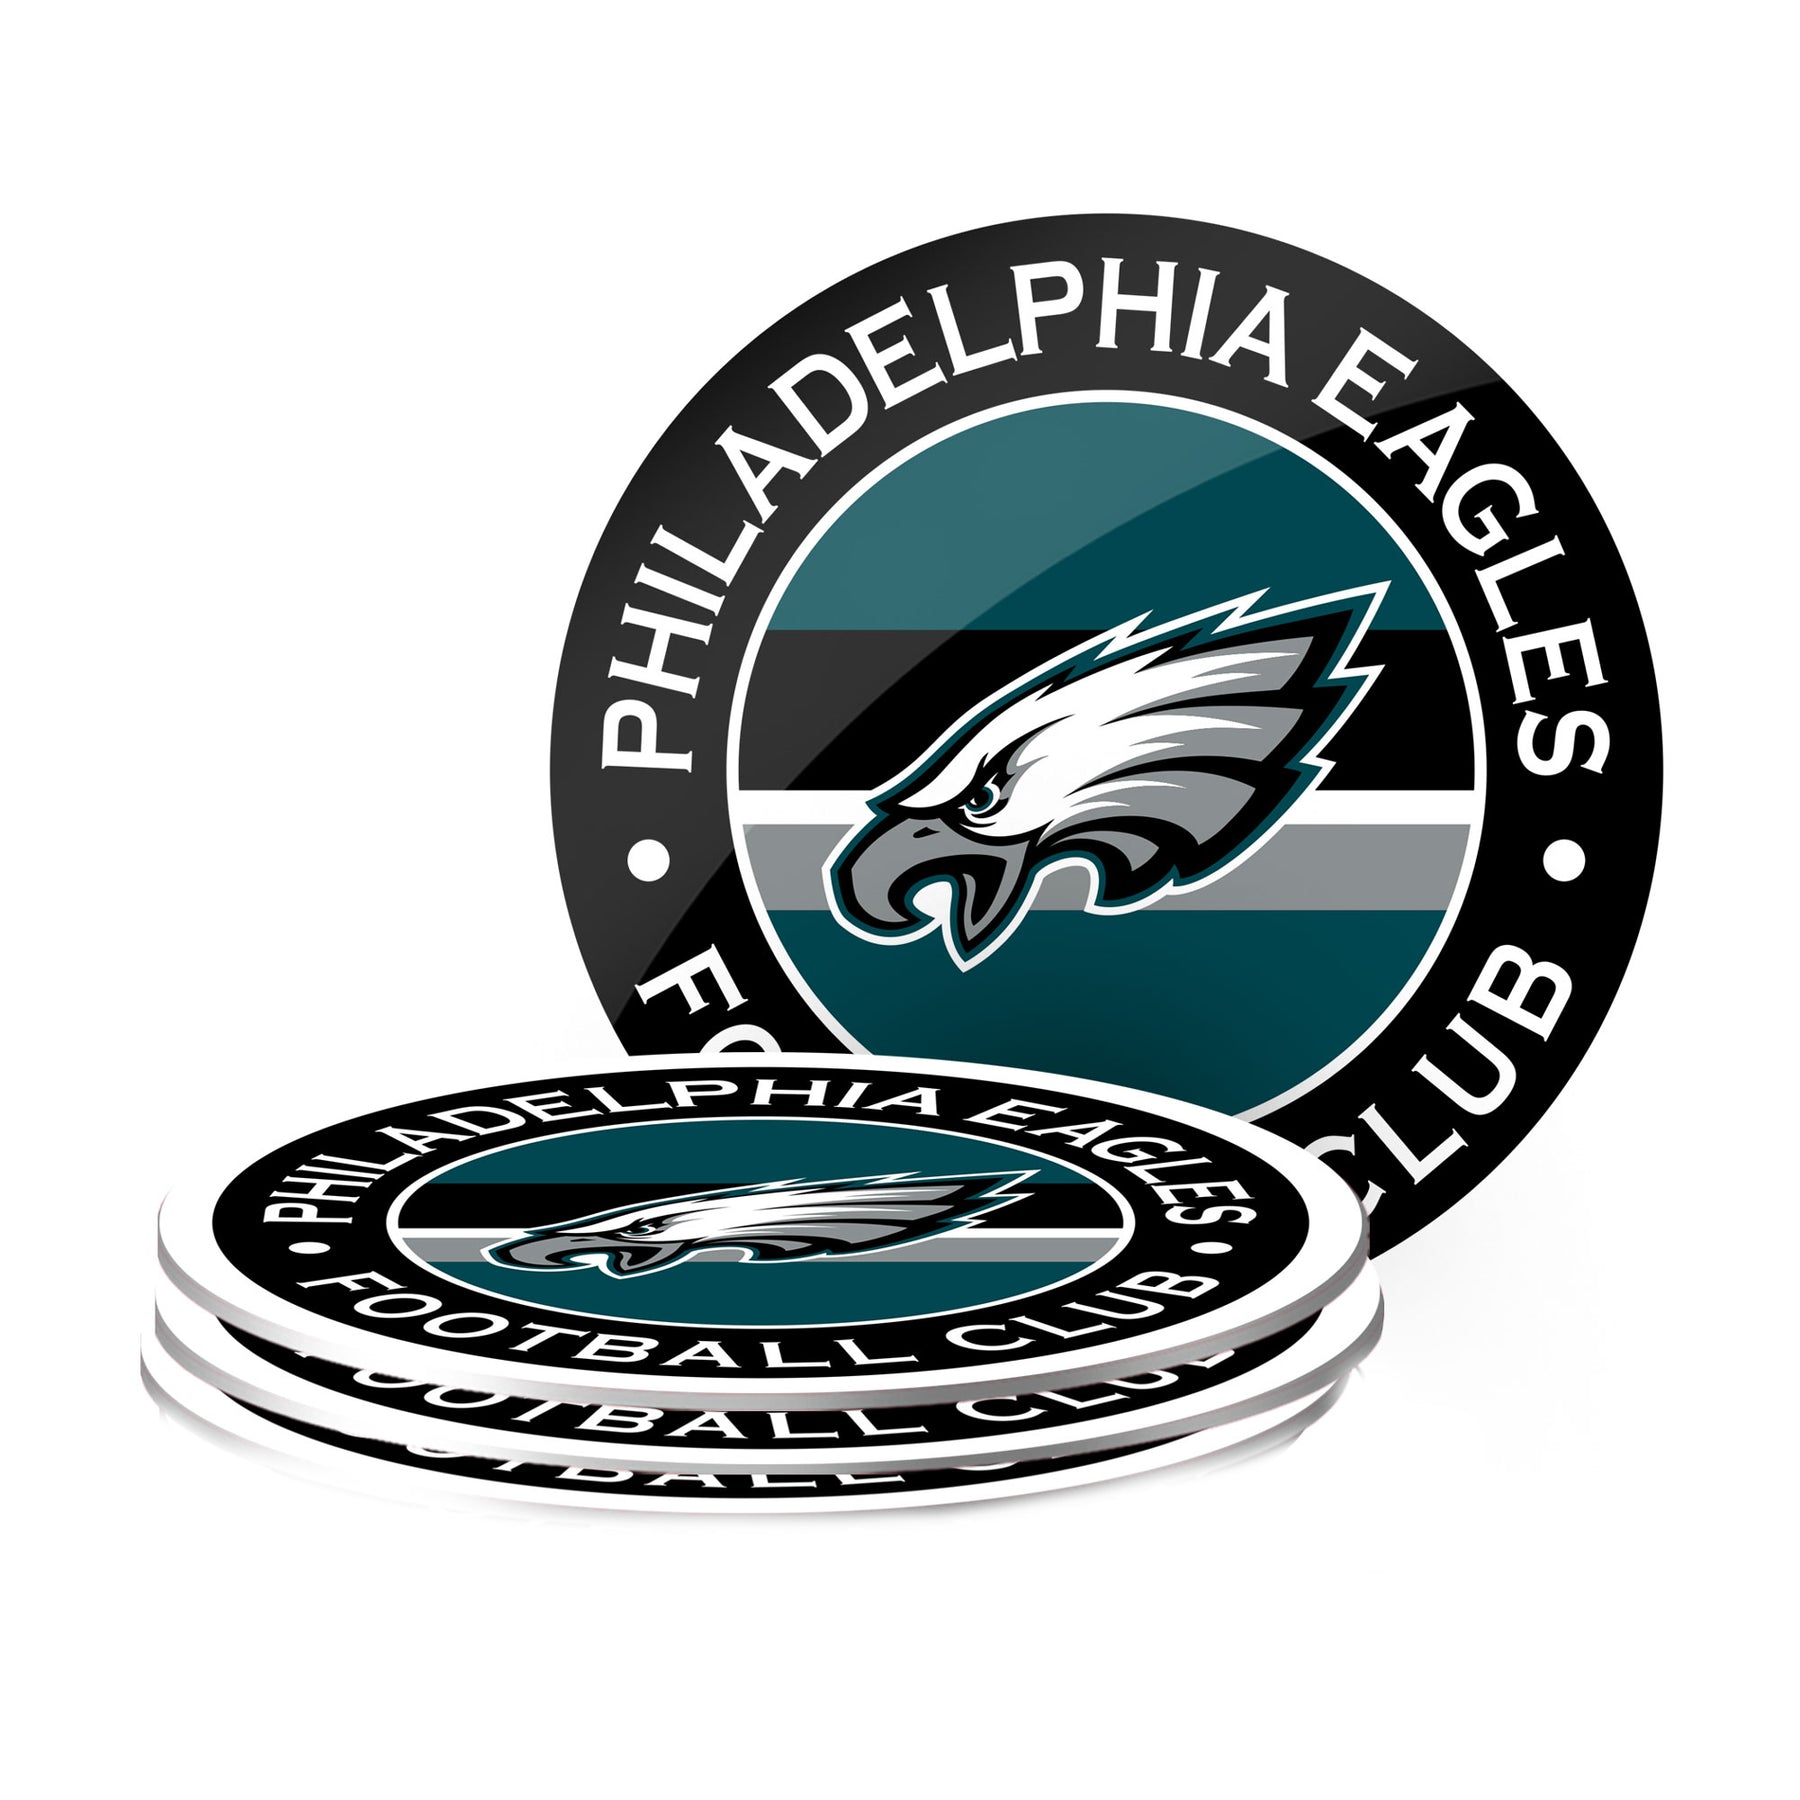 Philadelphia Eagles Coasters (4 pack)